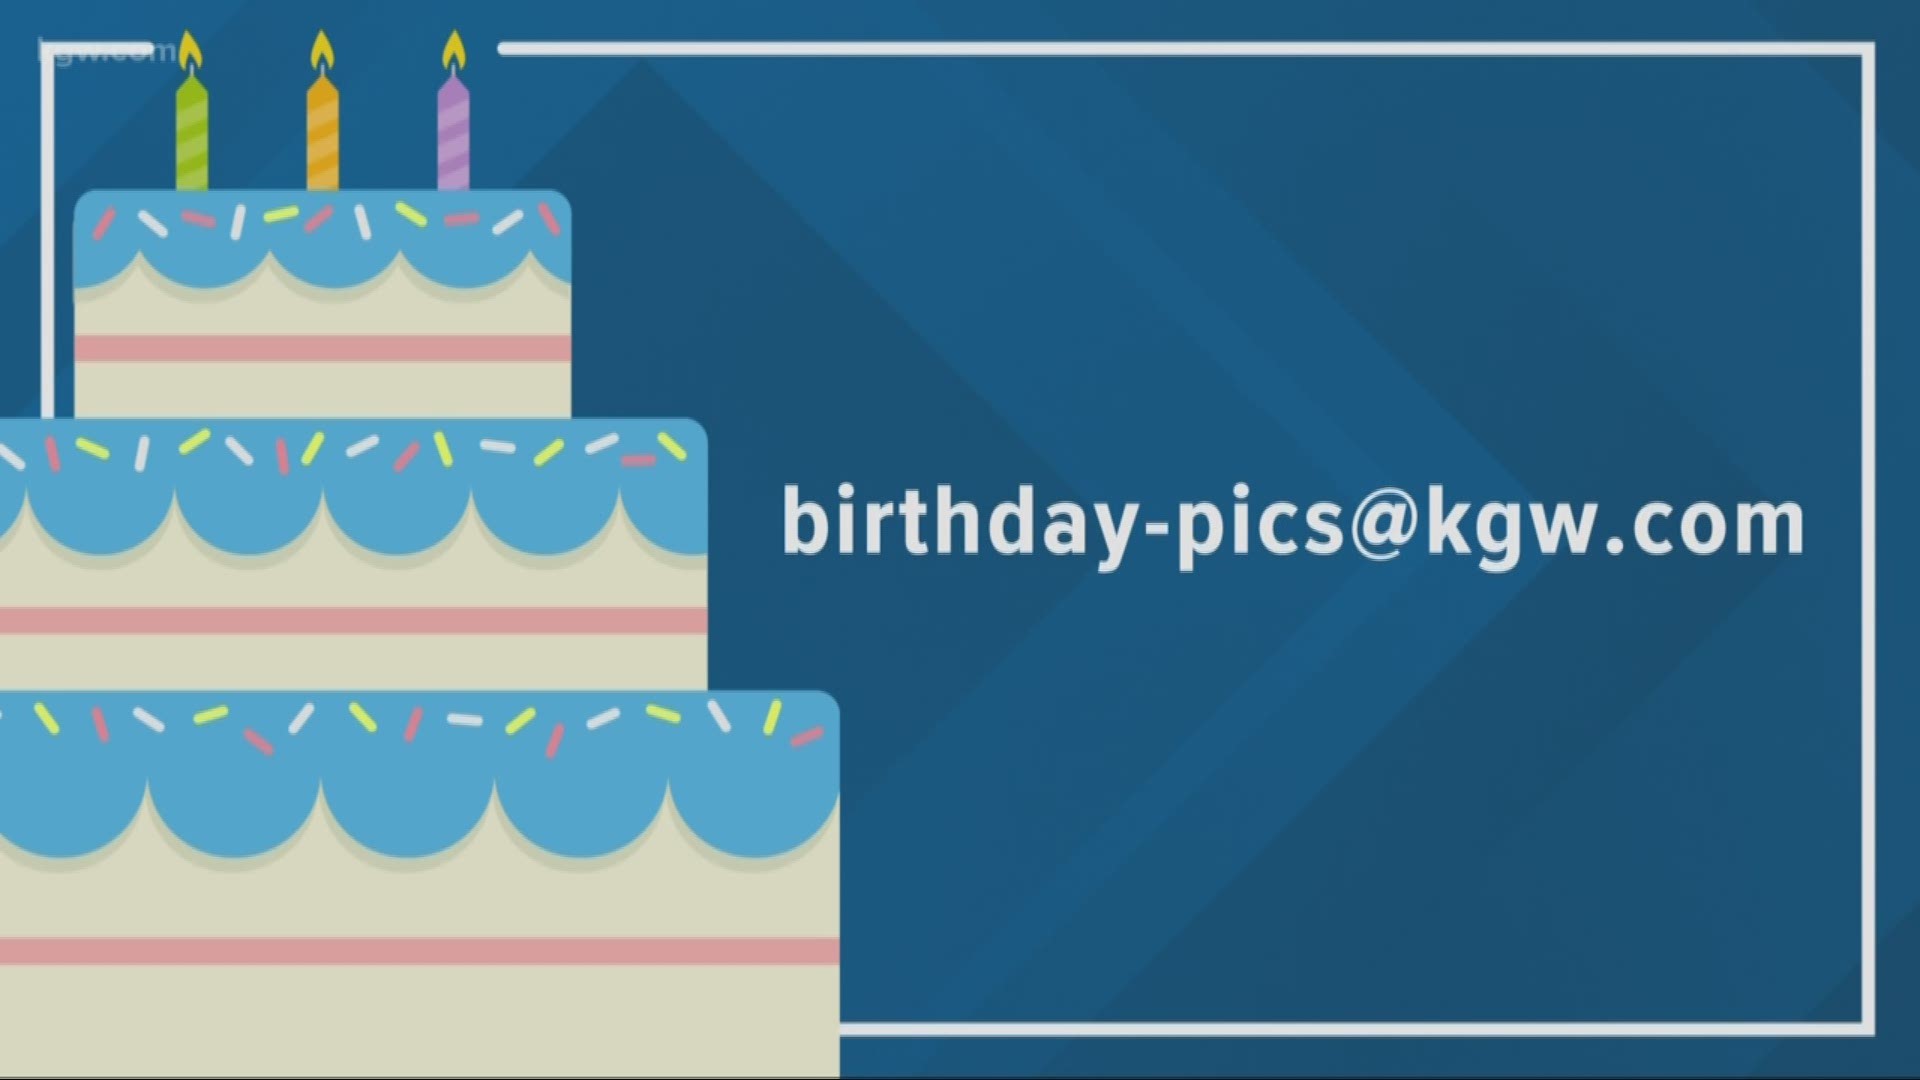 KGW viewer birthdays: 8-20-19